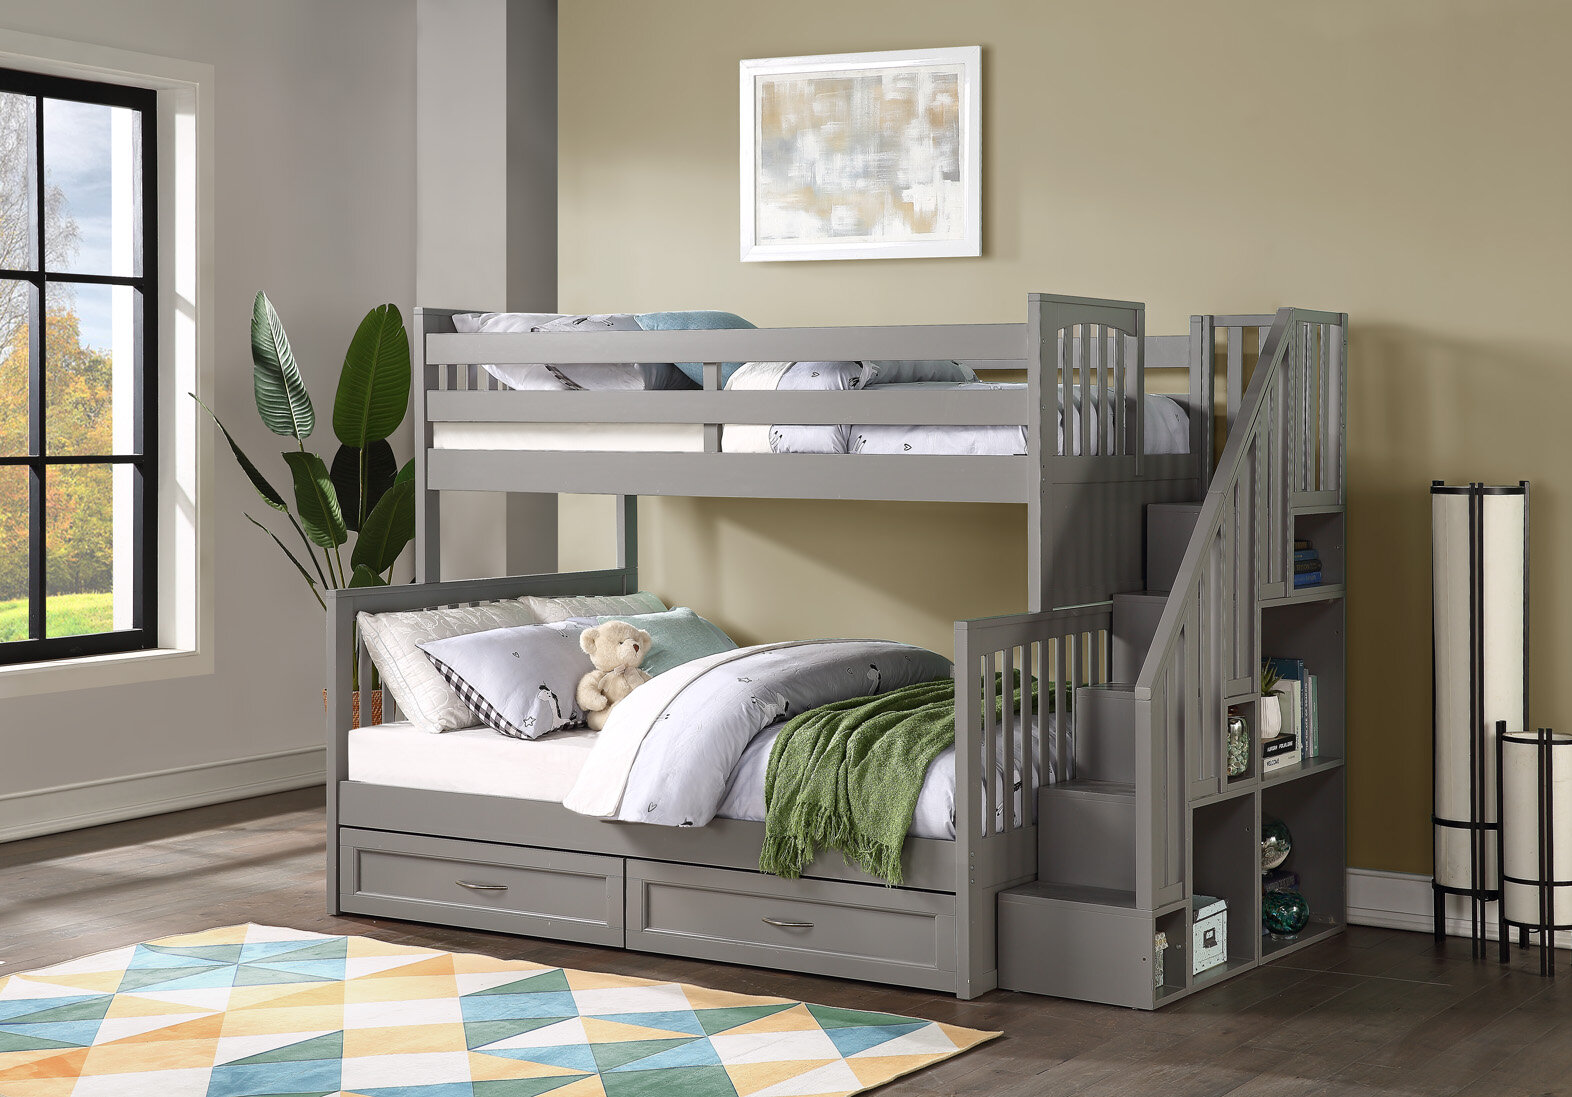 Caramia Furniture Bunk Beds, Simmons Tristan Bunk Bed Instructions